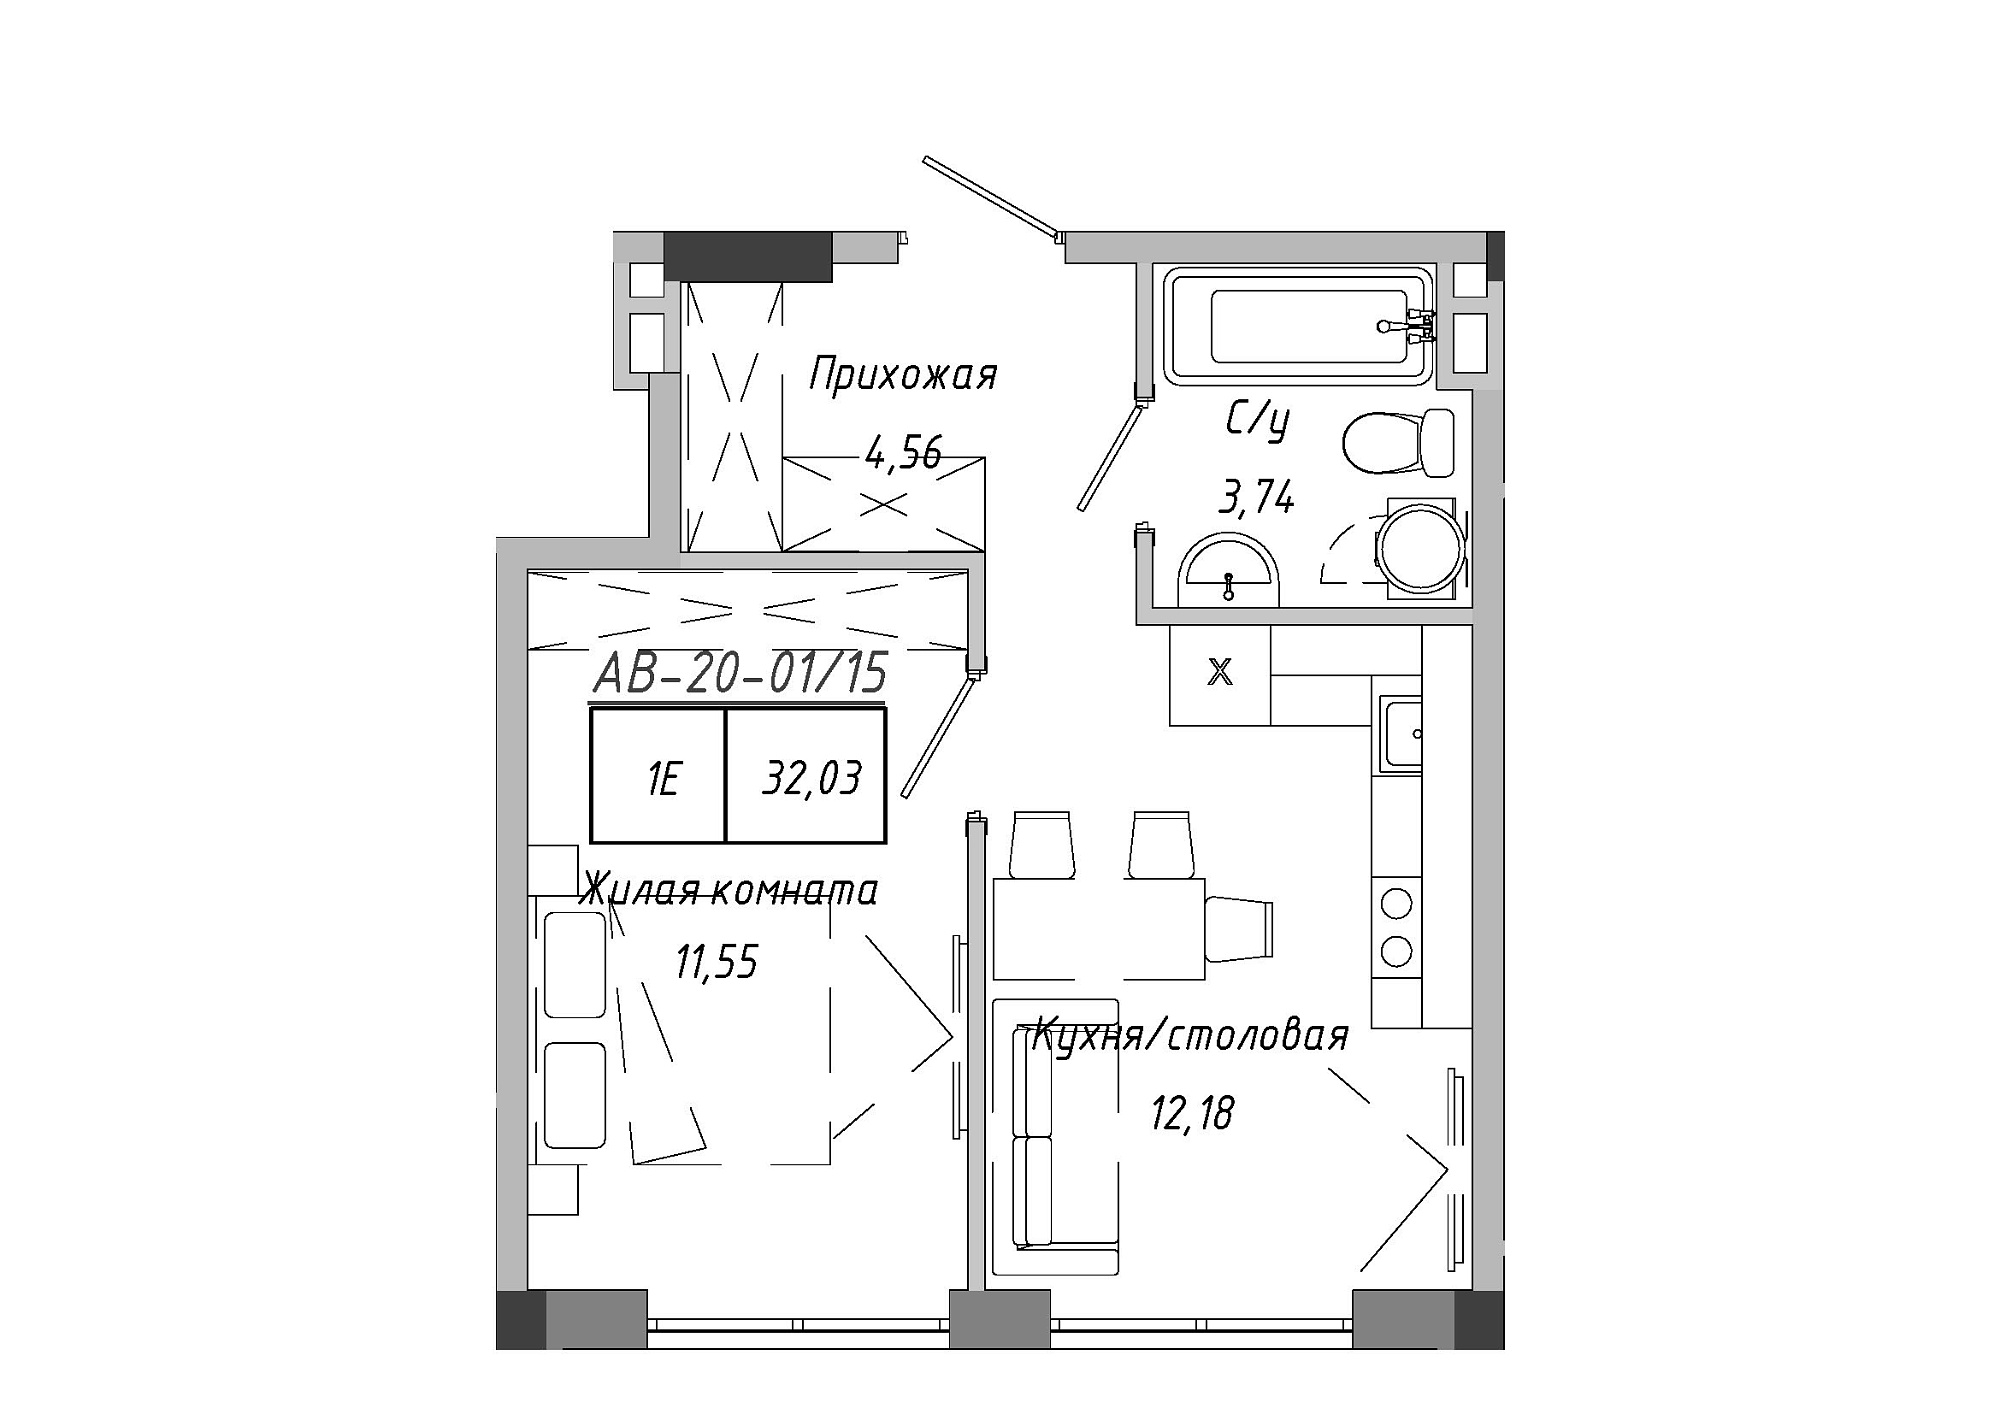 Планування 1-к квартира площею 32.03м2, AB-20-01/00015.